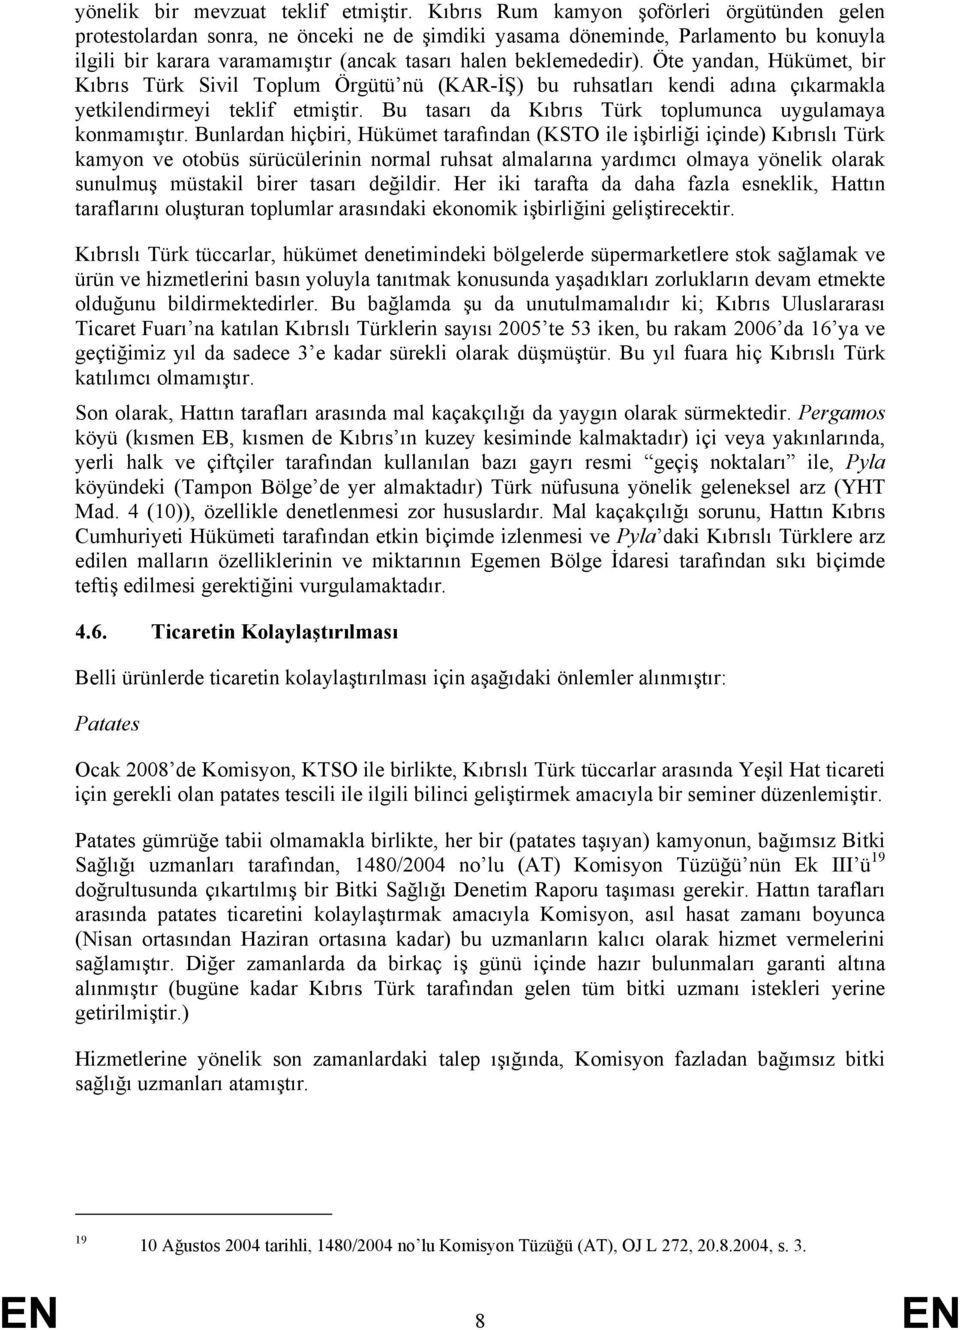 Öte yandan, Hükümet, bir Kıbrıs Türk Sivil Toplum Örgütü nü (KAR-İŞ) bu ruhsatları kendi adına çıkarmakla yetkilendirmeyi teklif etmiştir. Bu tasarı da Kıbrıs Türk toplumunca uygulamaya konmamıştır.